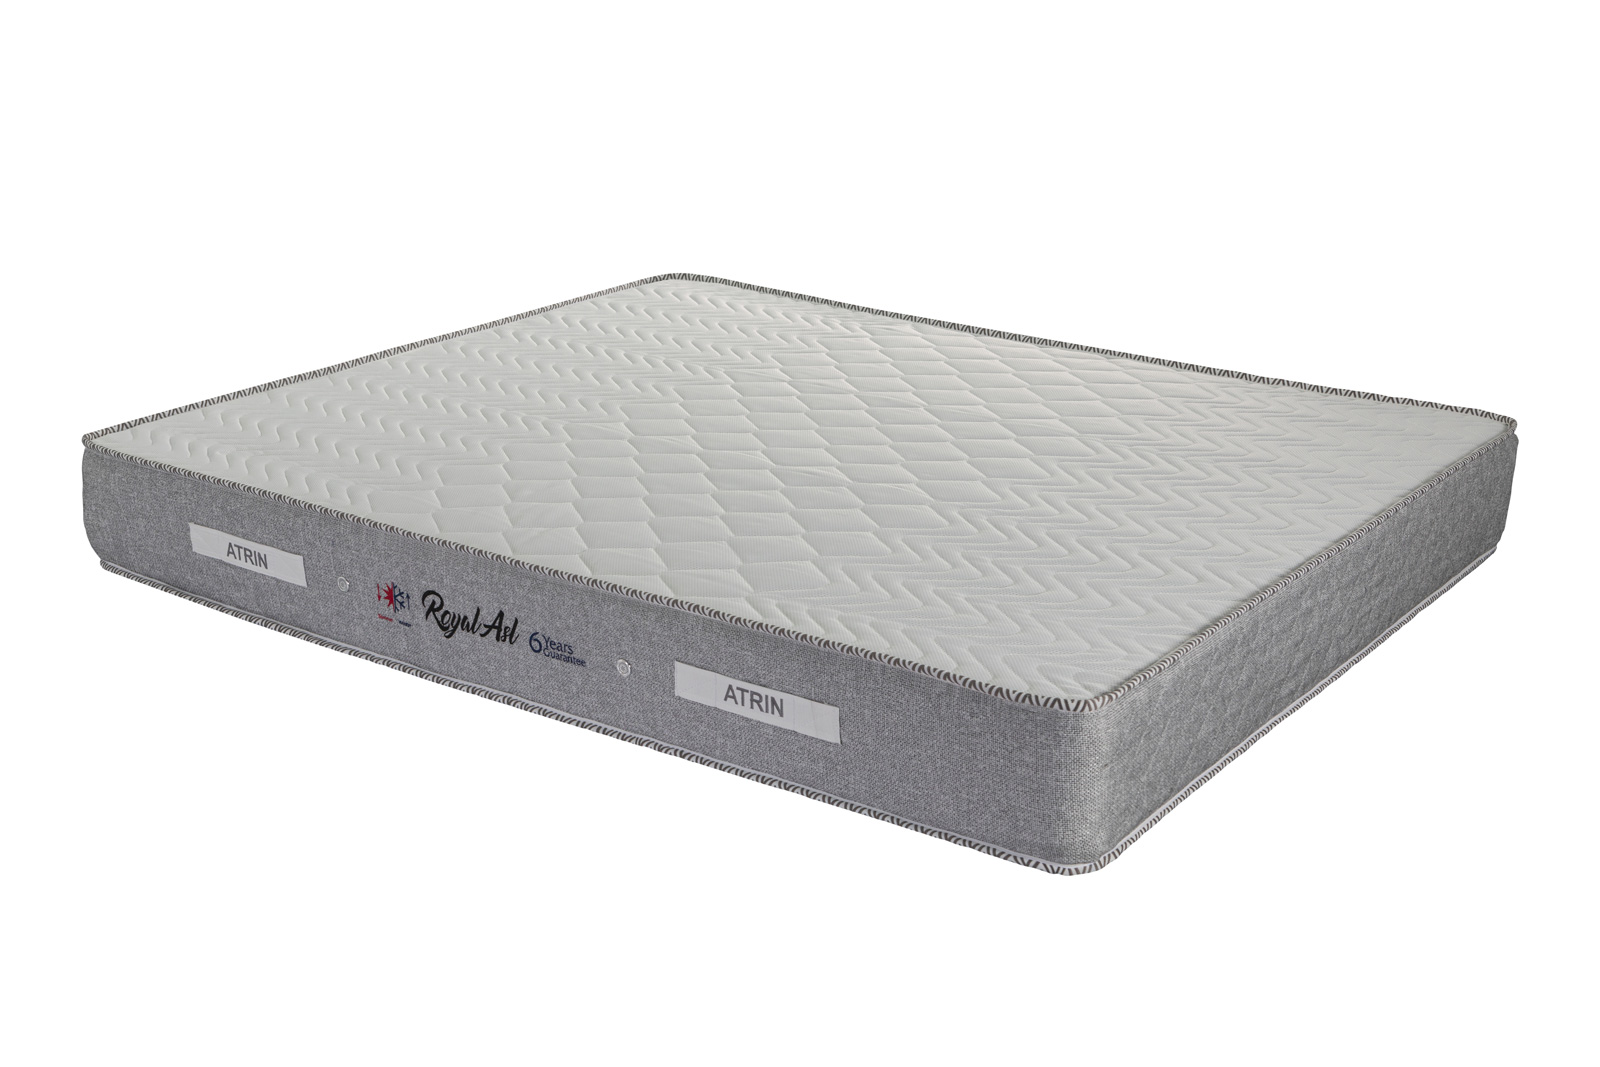 قیمت تشک رویال luxury mattress